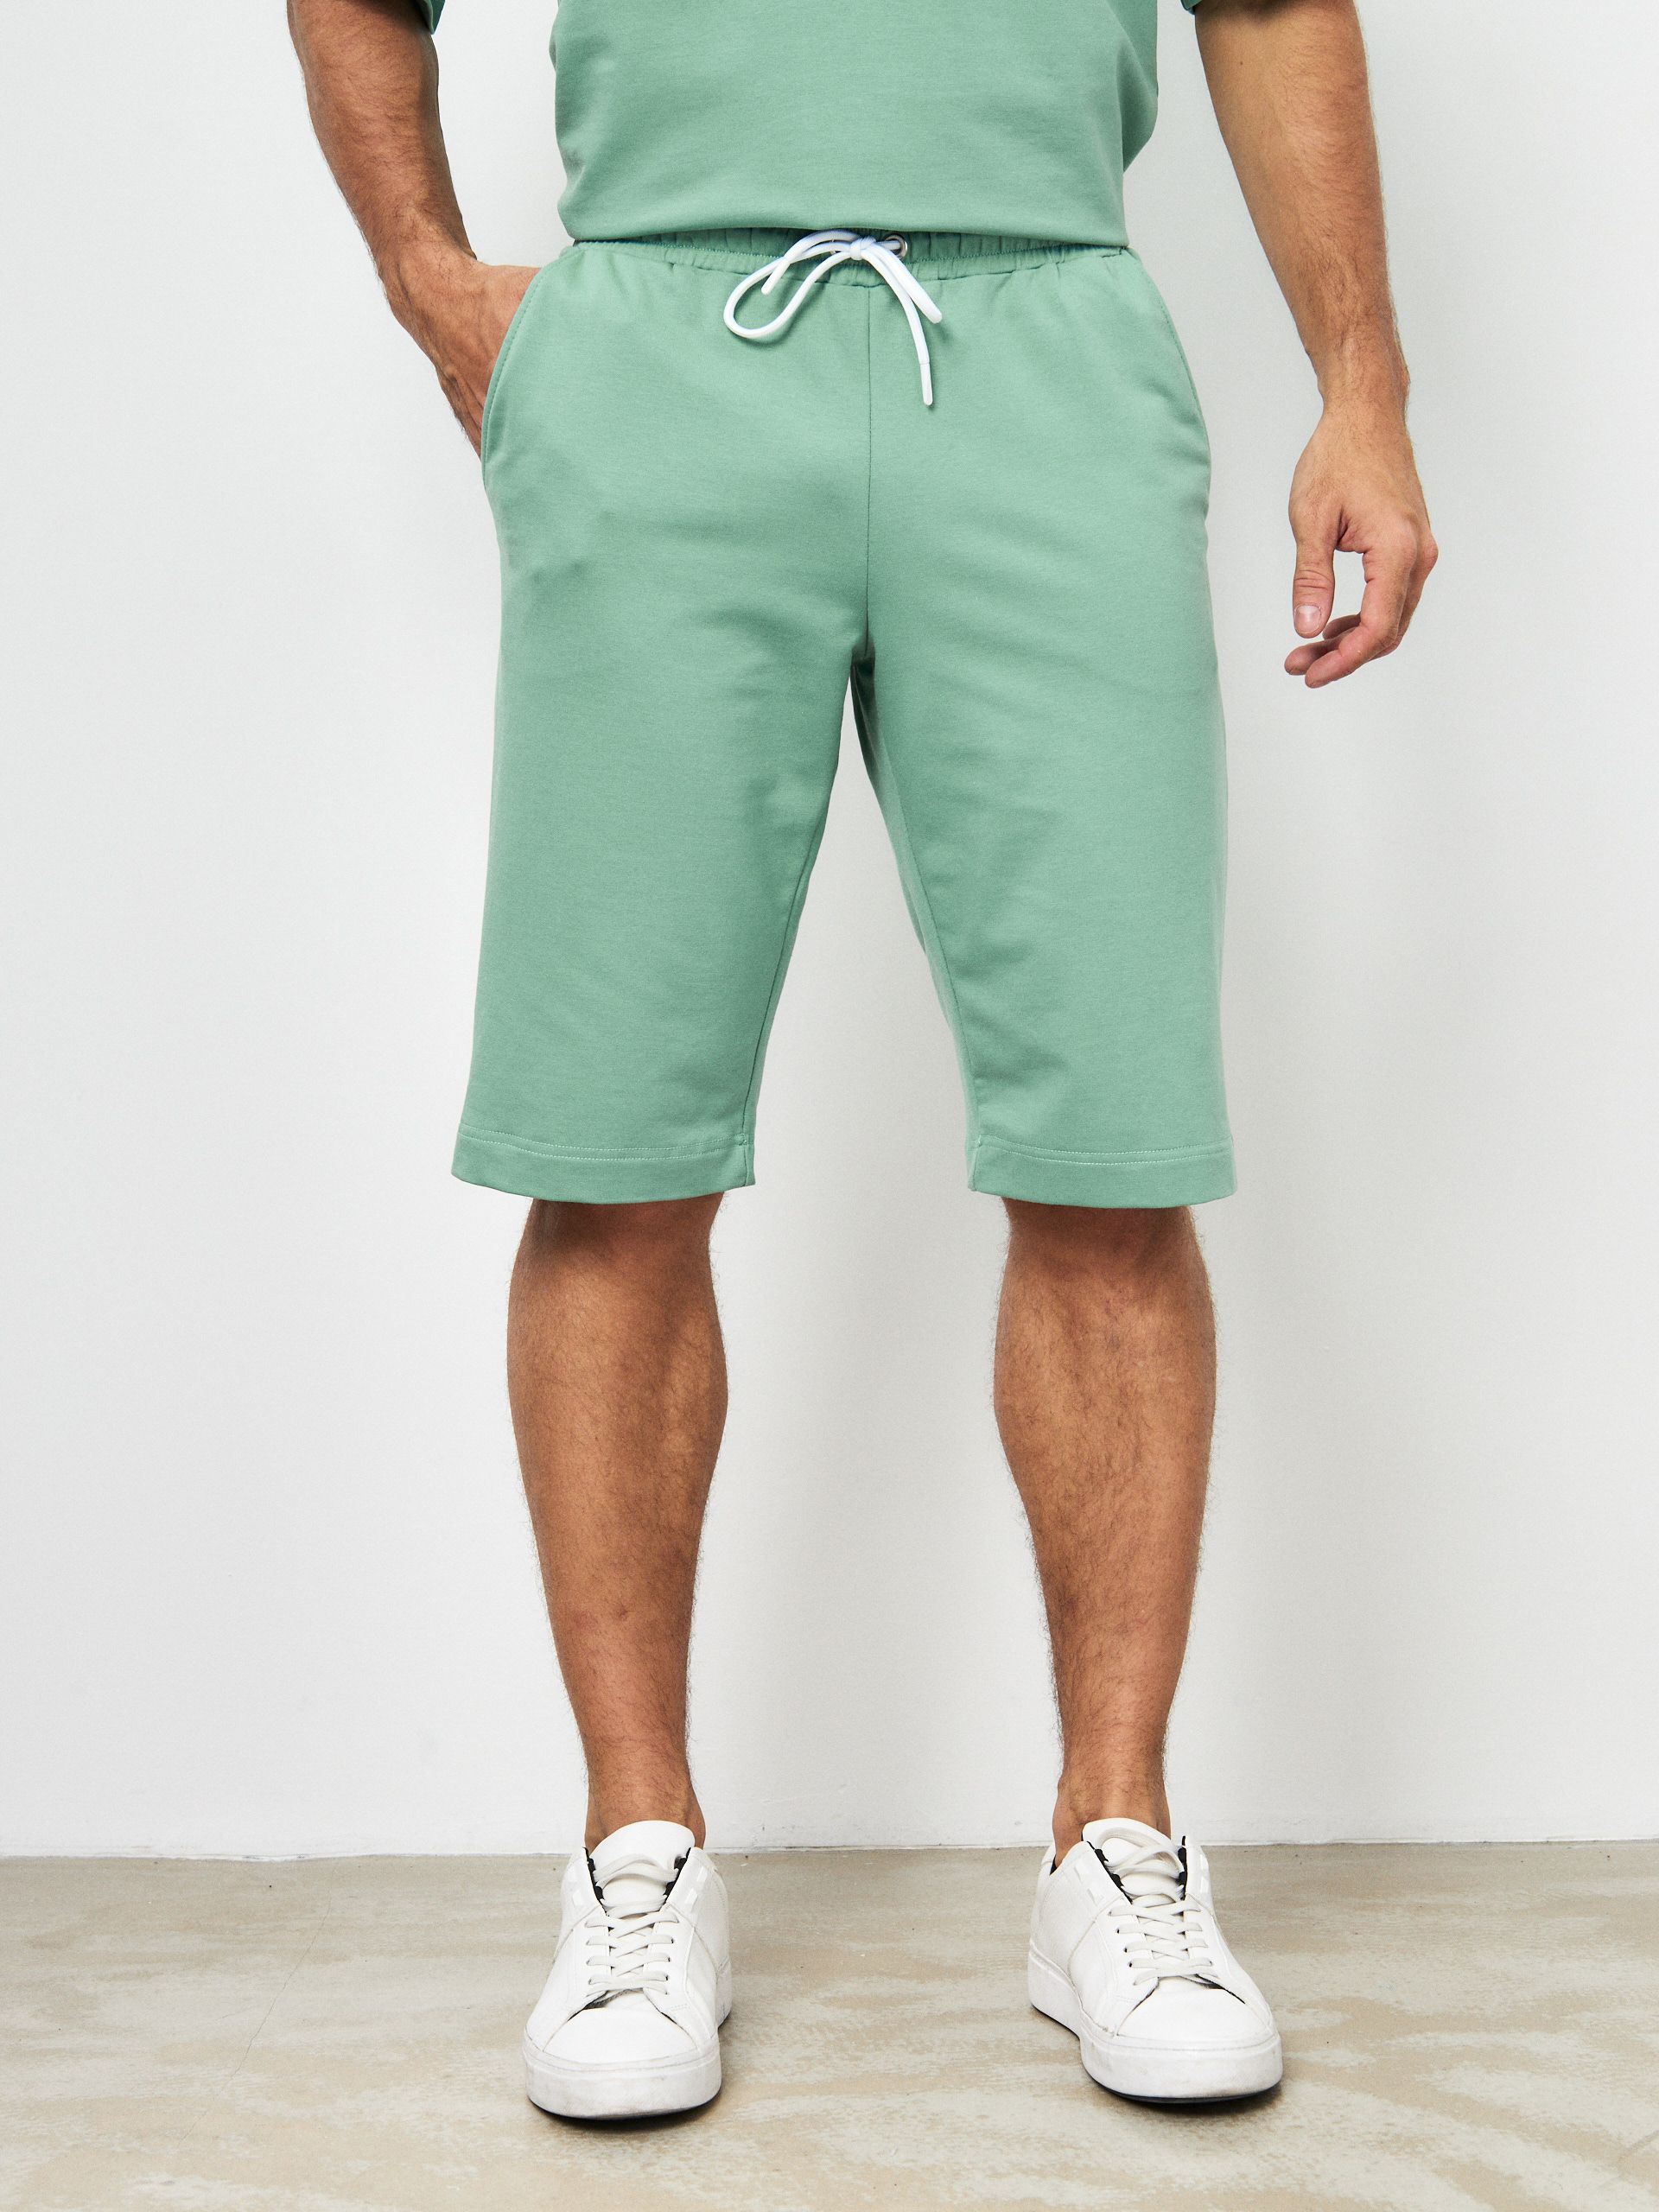 Повседневные шорты мужские MOM №1 MOM-88-3180 зеленые M